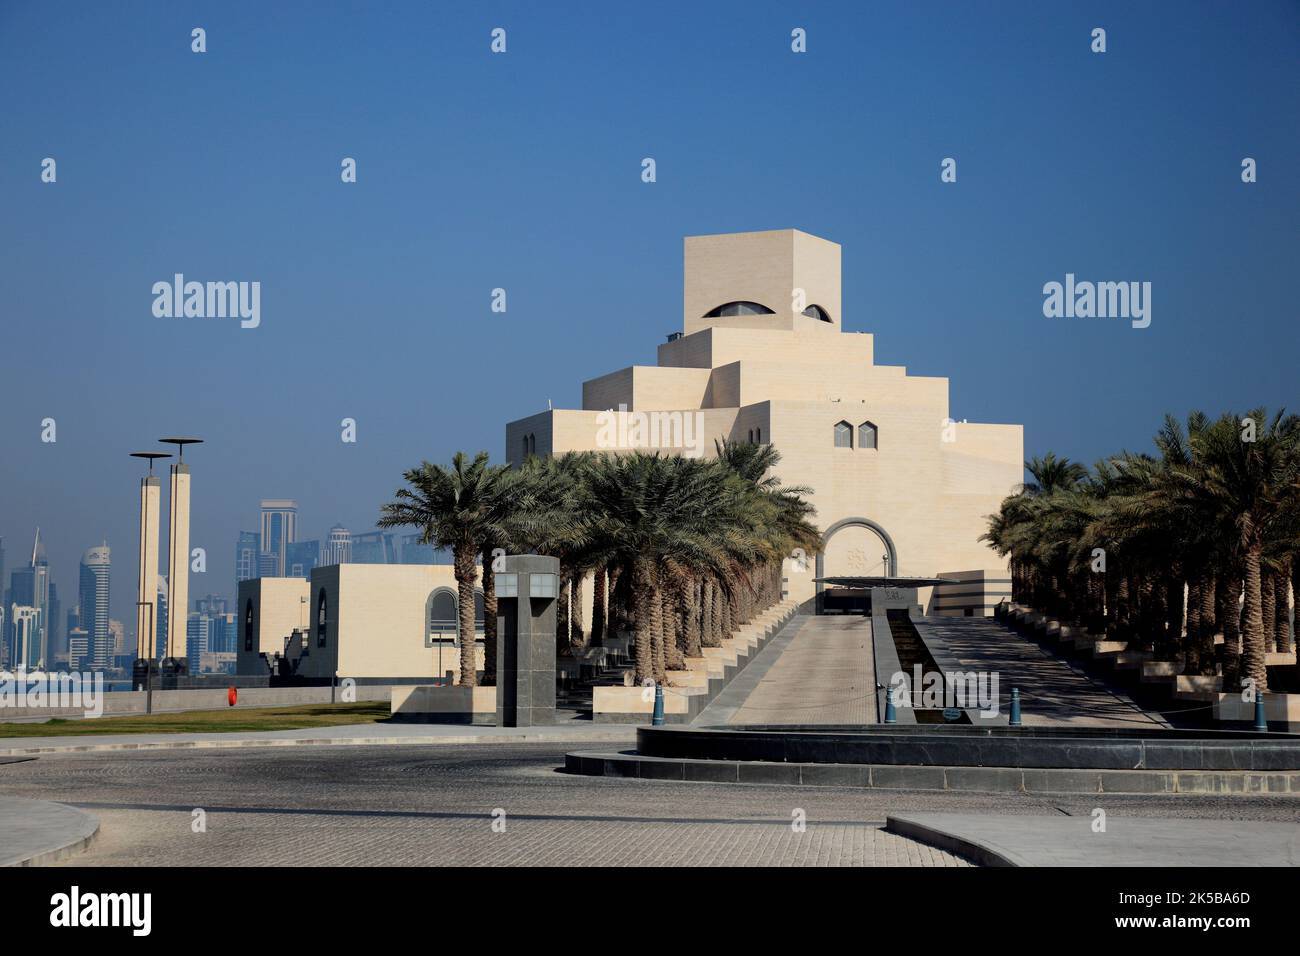 Museum für islamische Kunst, Doha, gilt als bedeutenstes Museum für islamische Kunst in Arabien, Wahrzeichen der Stadt Doha, Qatar, Katar Stock Photo